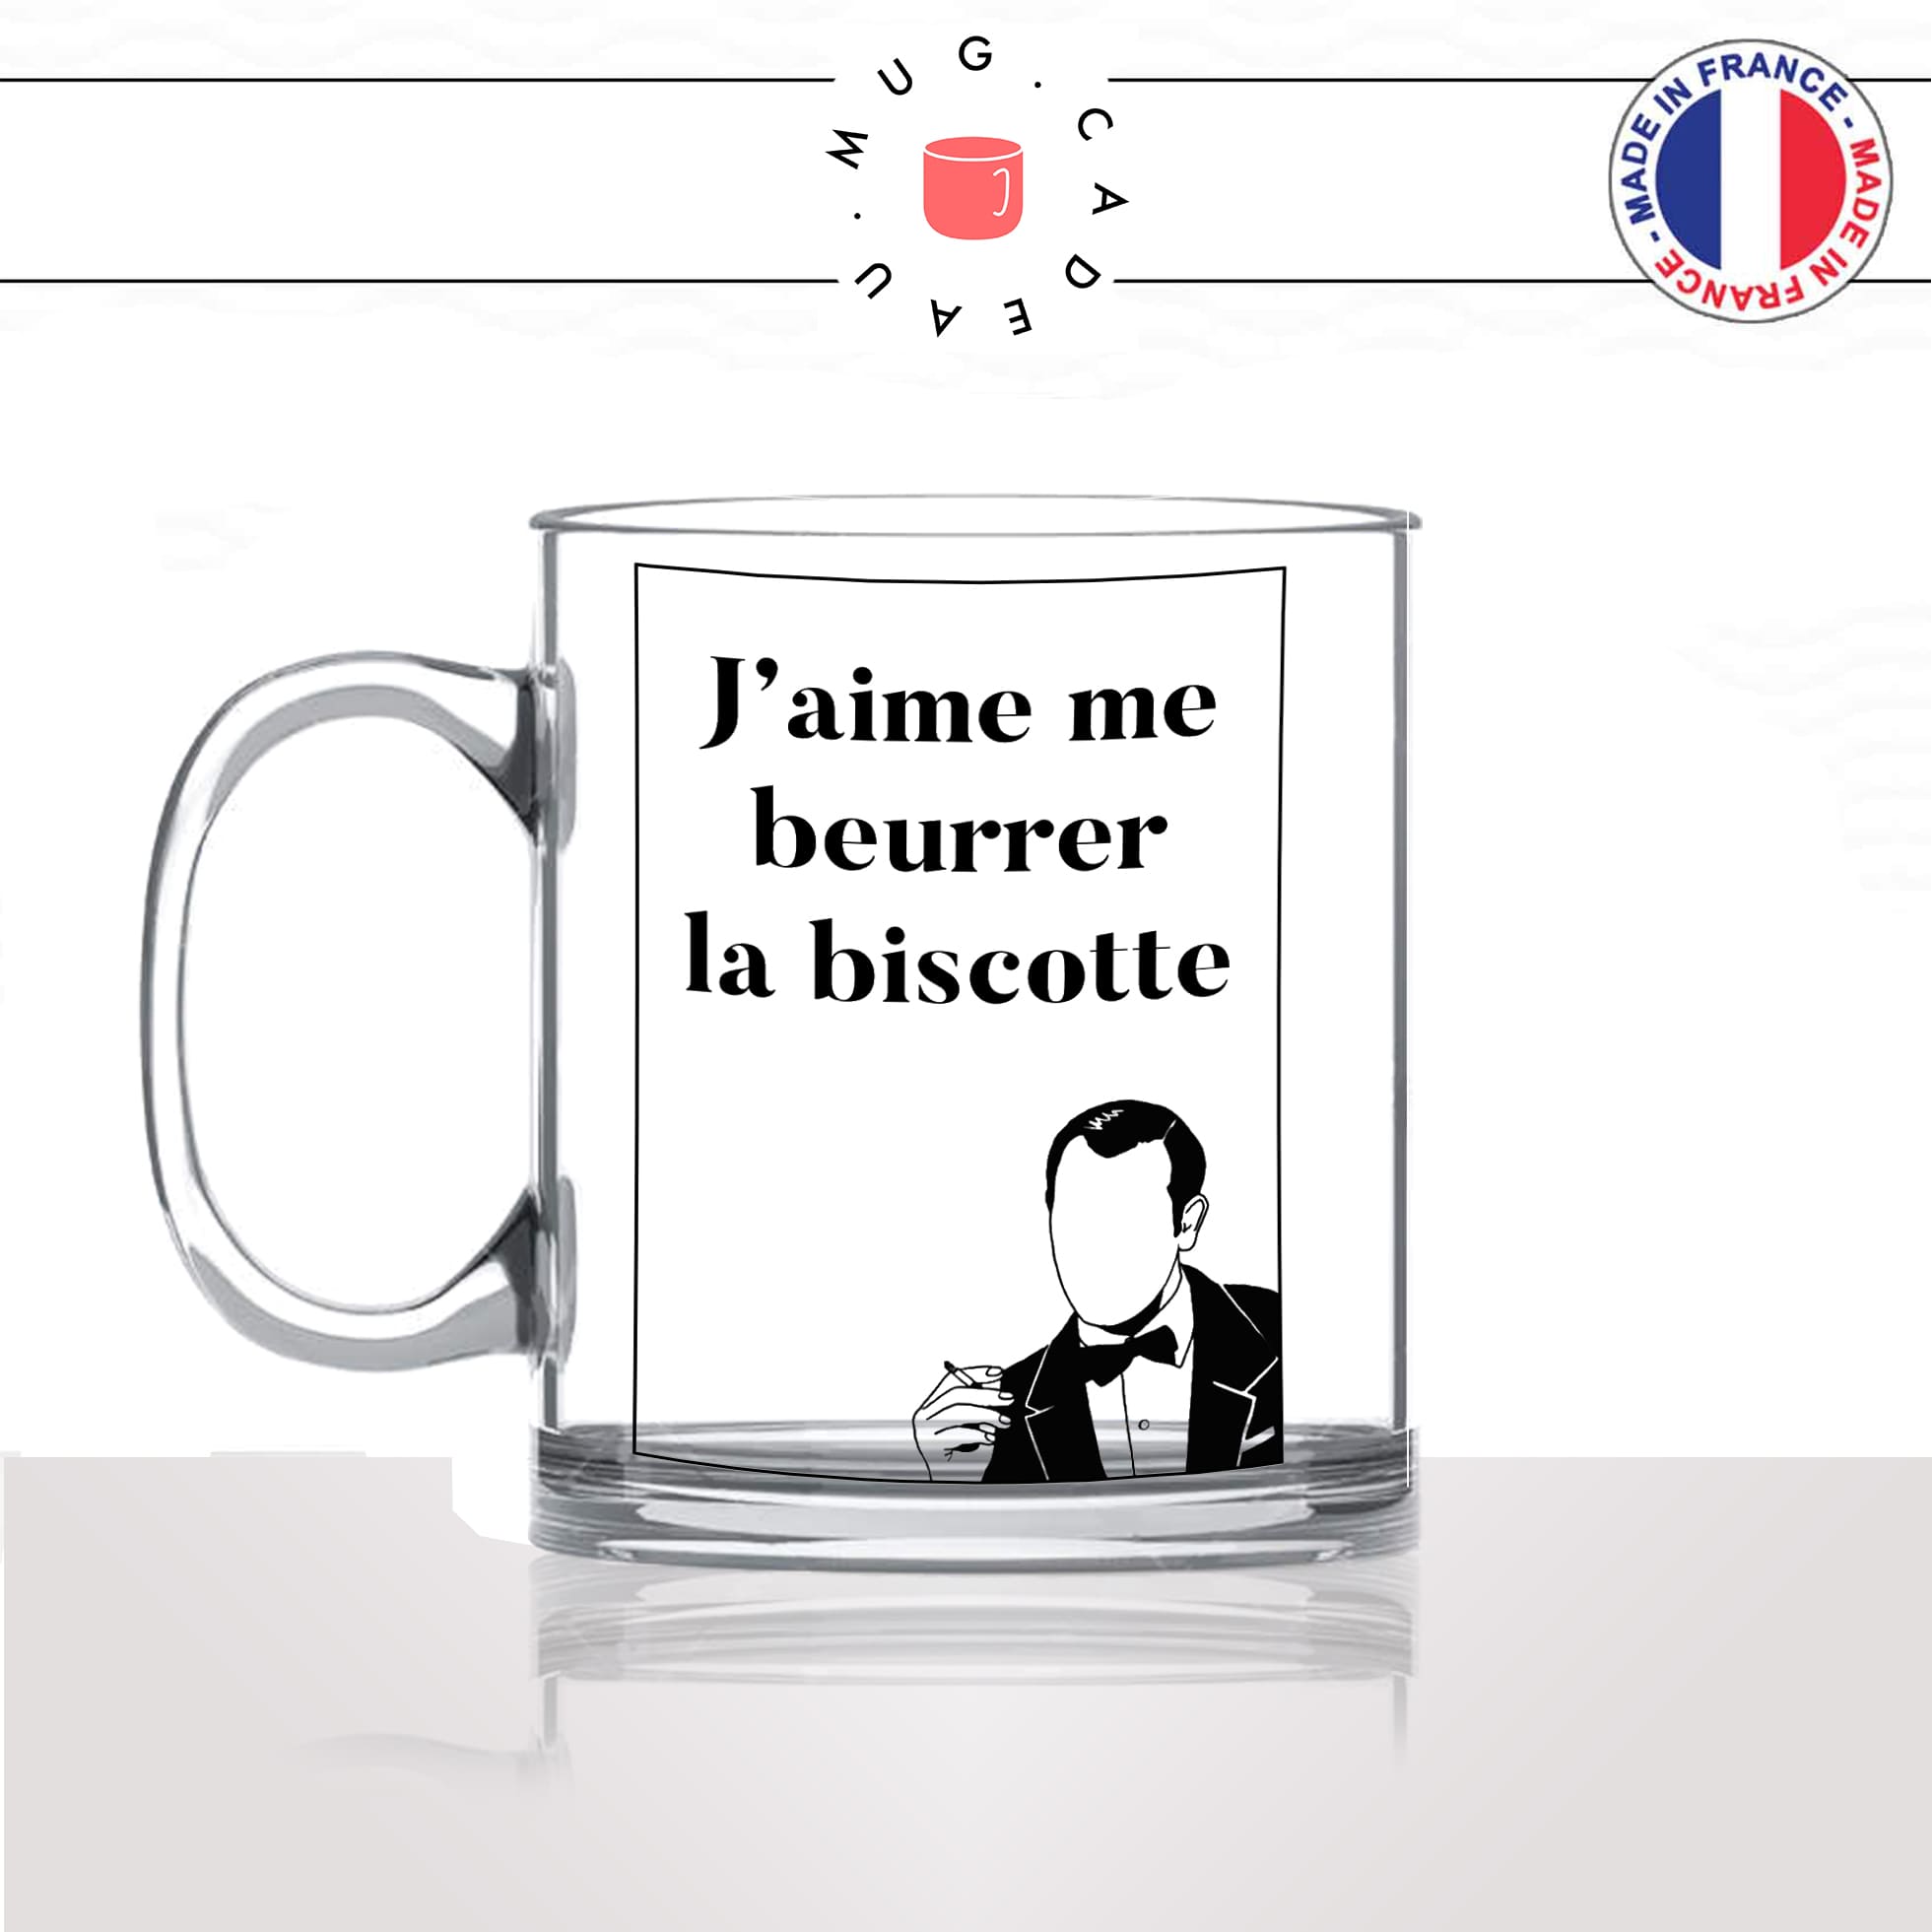 mug-tasse-en-verre-transparent-glass-film-francais-oss117-jaime-me-beurrer-la-biscotte-matin-reveil-humour-idée-cadeau-fun-cool-café-thé